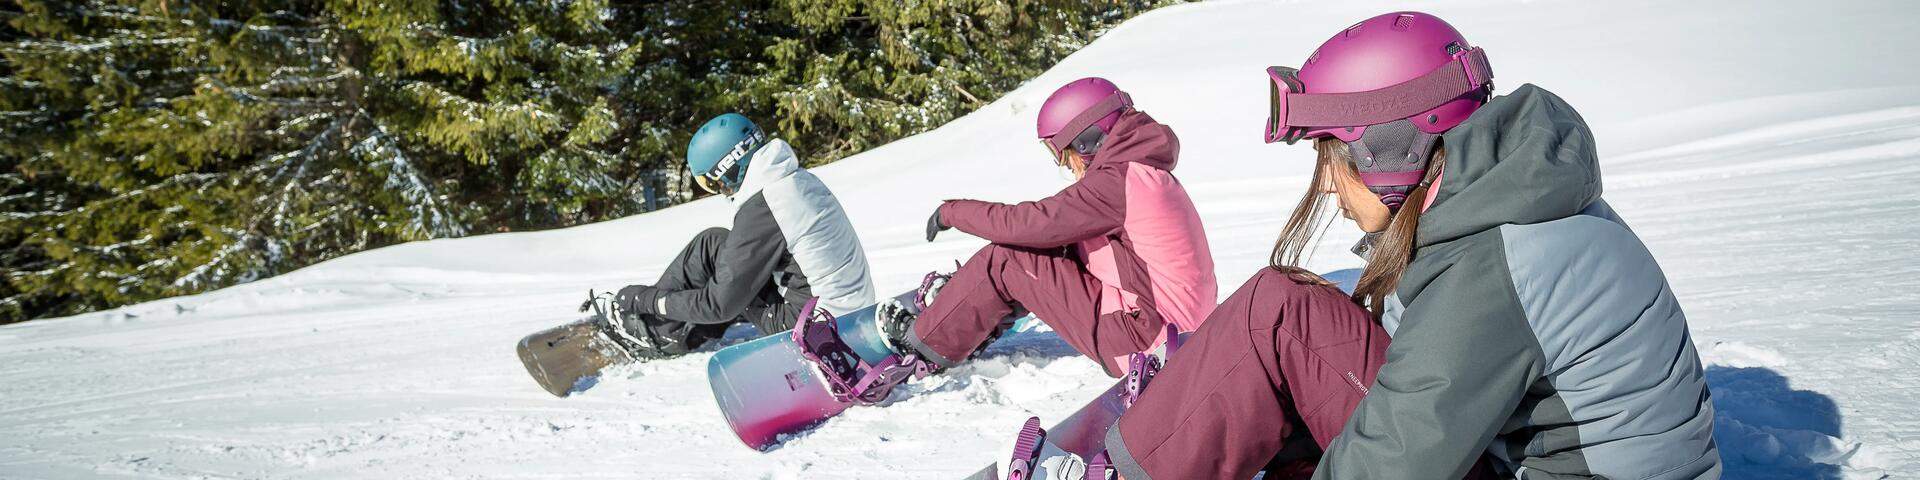 ludzie w strojach snowboardowych siedzący na śniegu